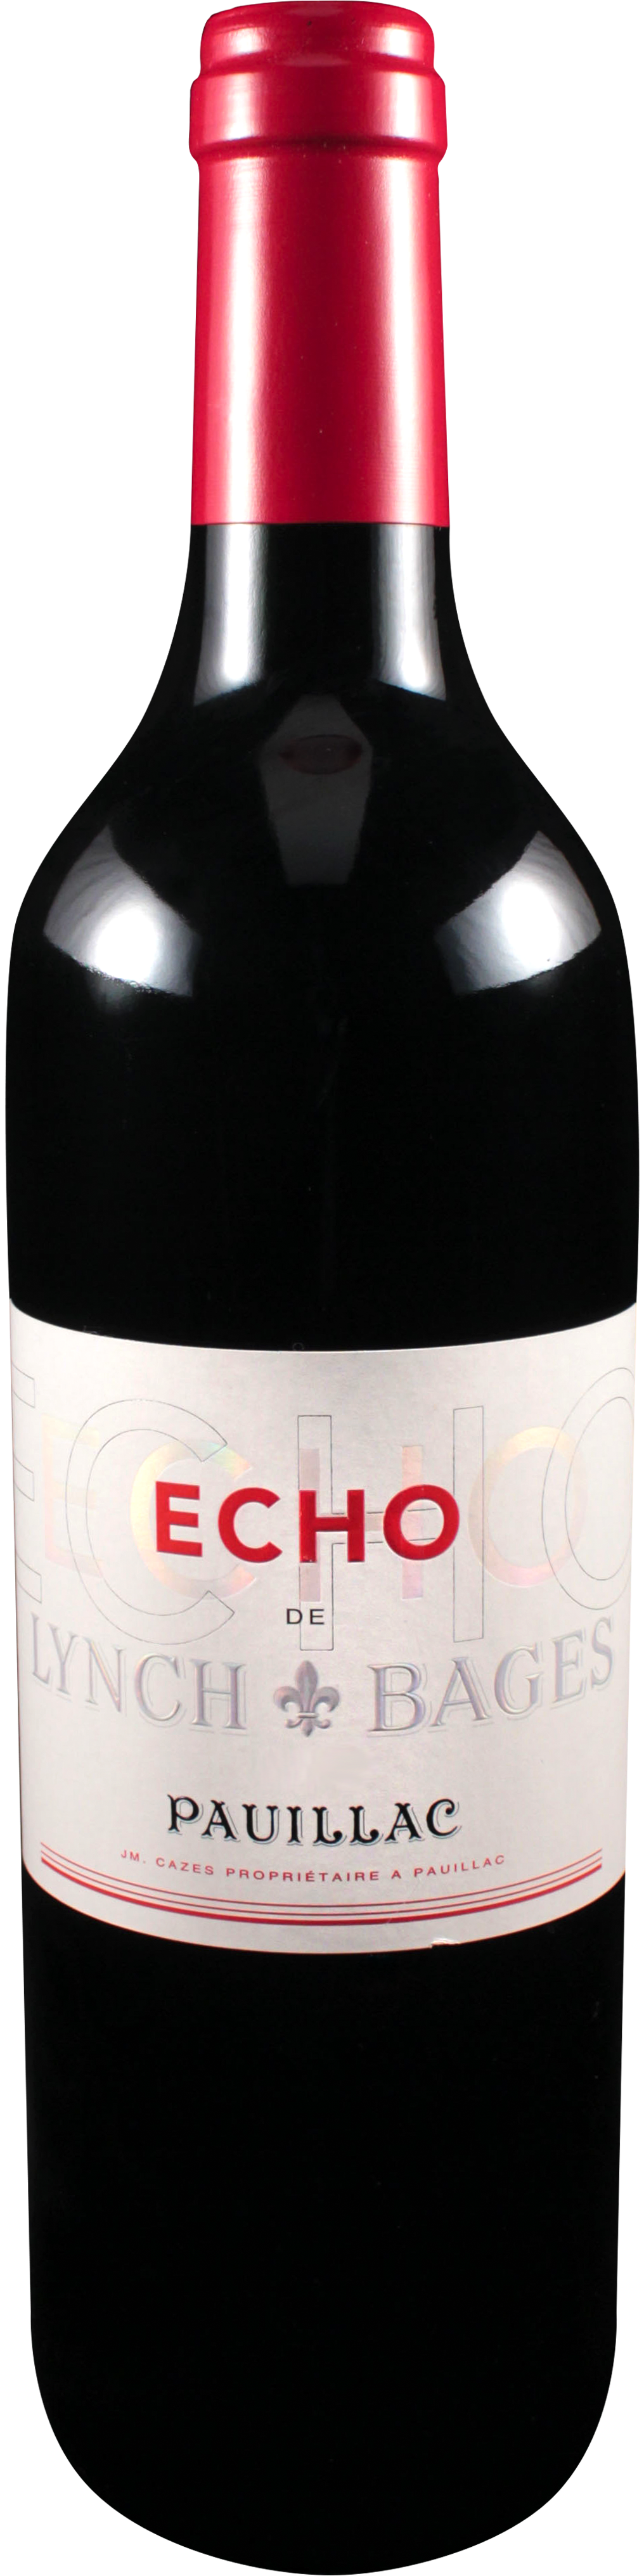 Image of product Echo de Lynch Bages, 5ème Cru Pauillac